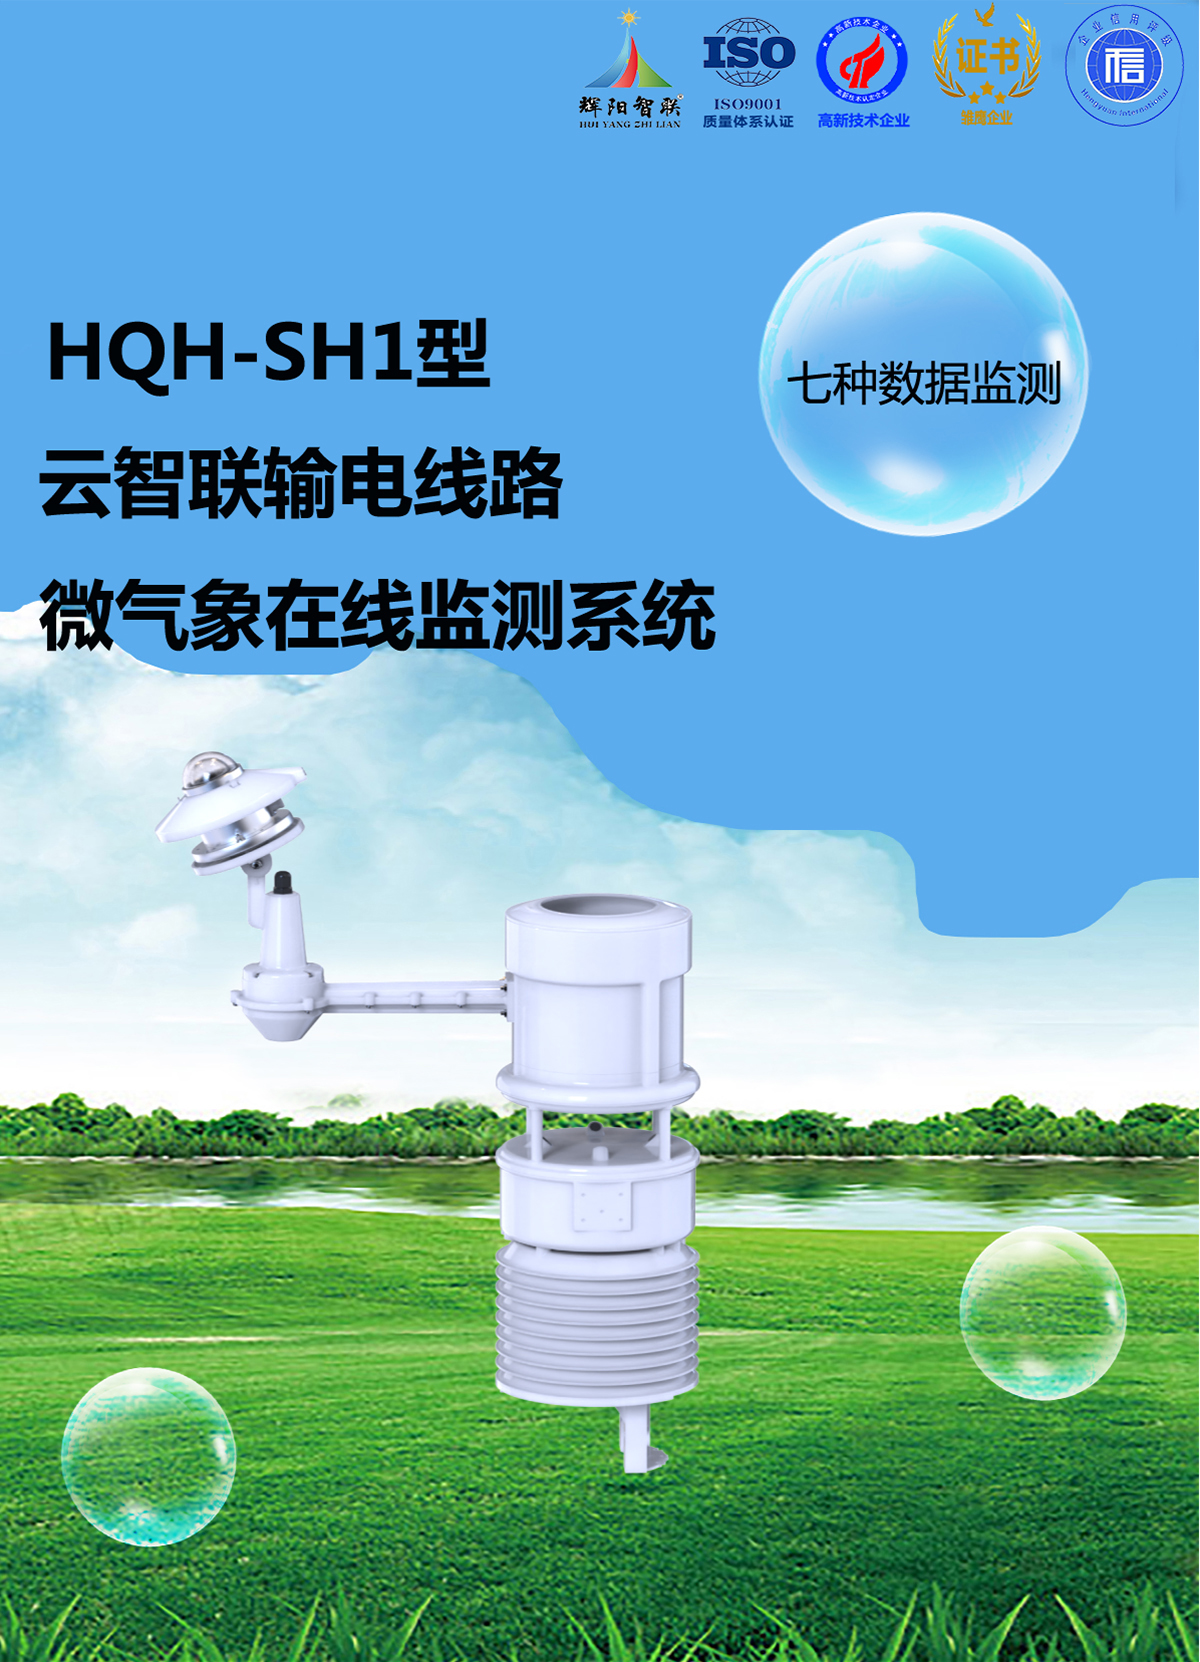 HQH-SH1型输电线路微气象在线监测